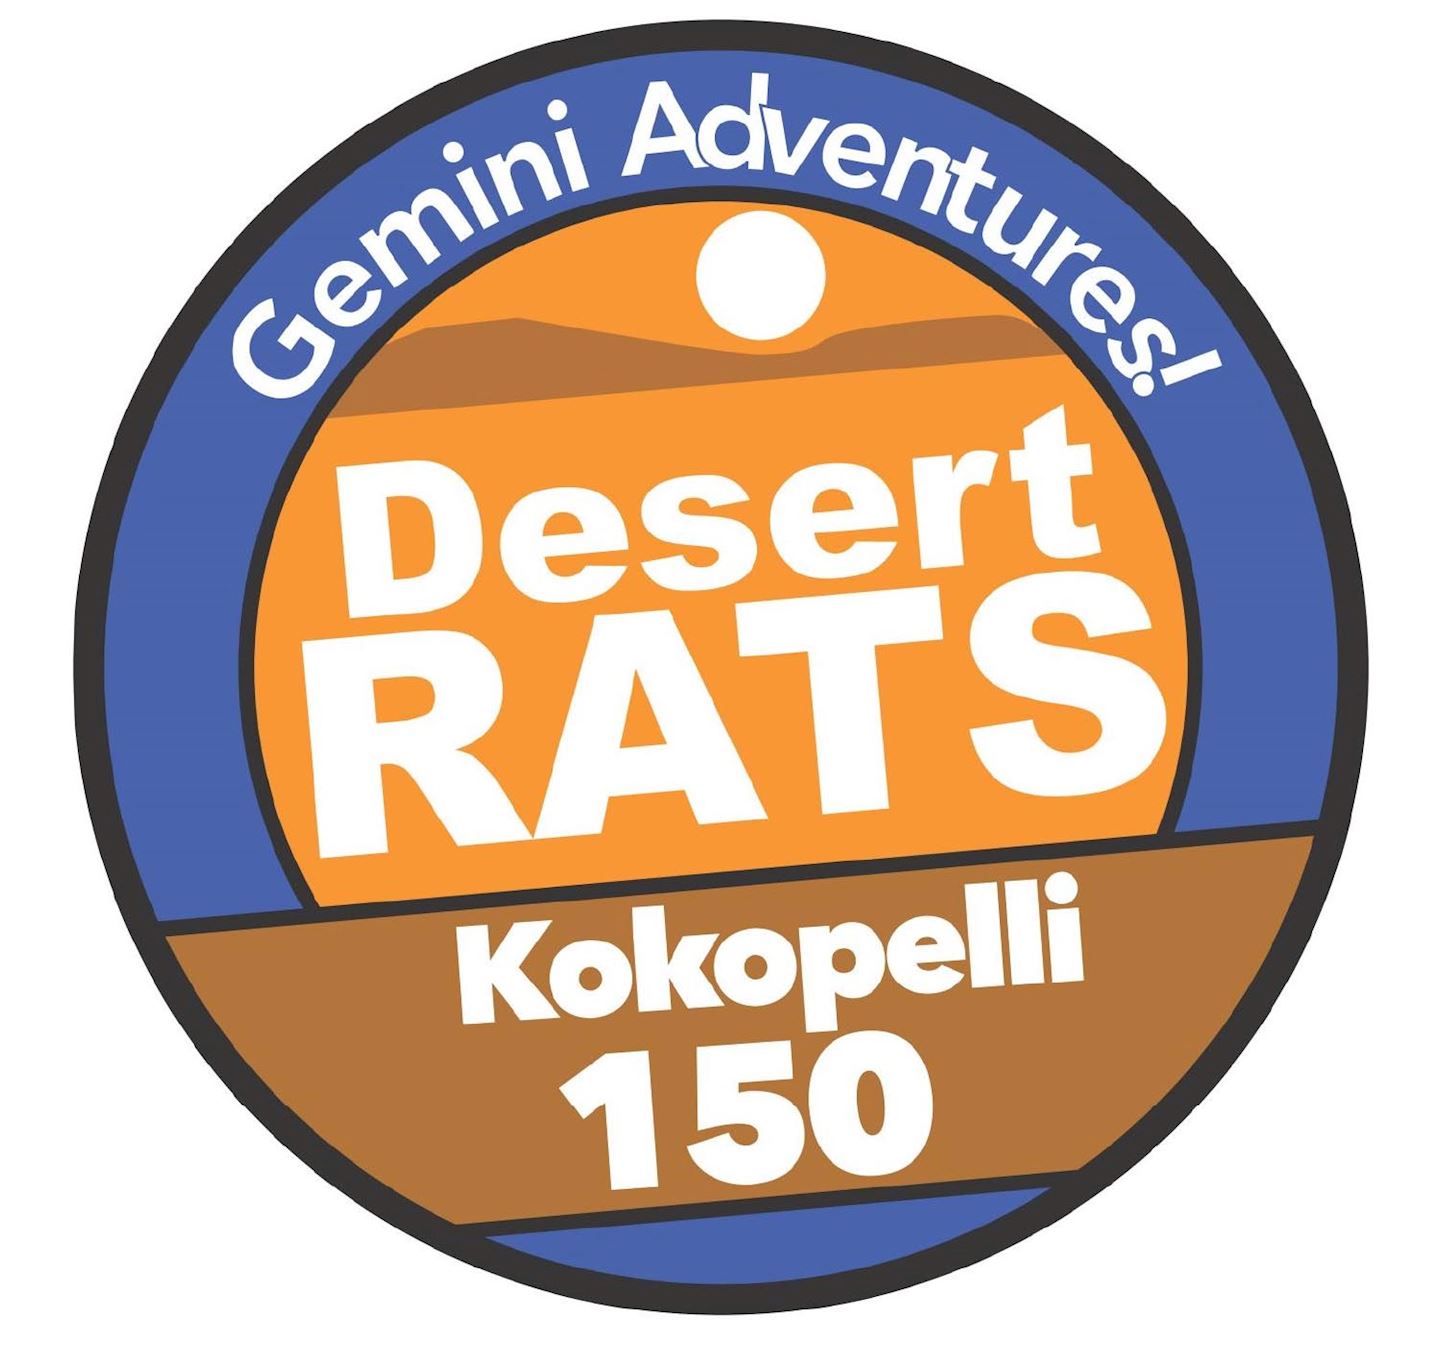 desert rats kokopelli 150 stage race